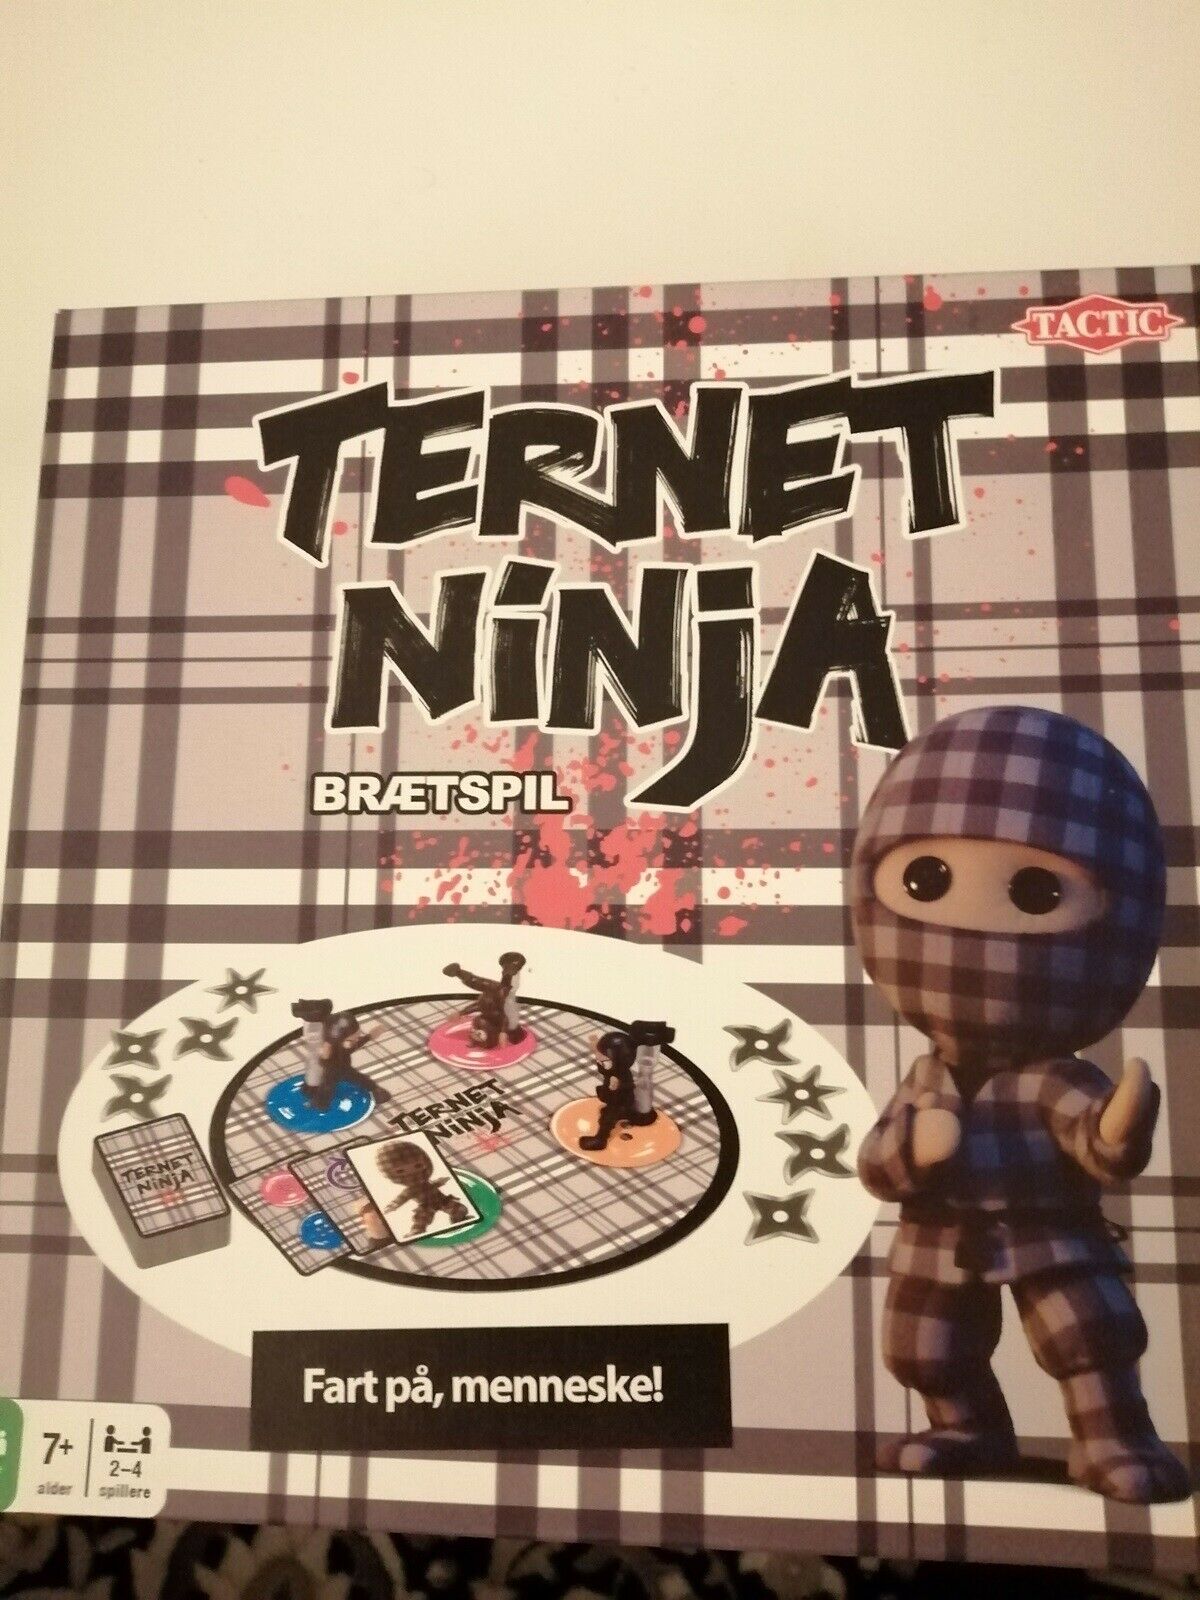 Ninja Spil, Børne/familiespill, brætspil – dba.dk – og Salg Nyt og Brugt